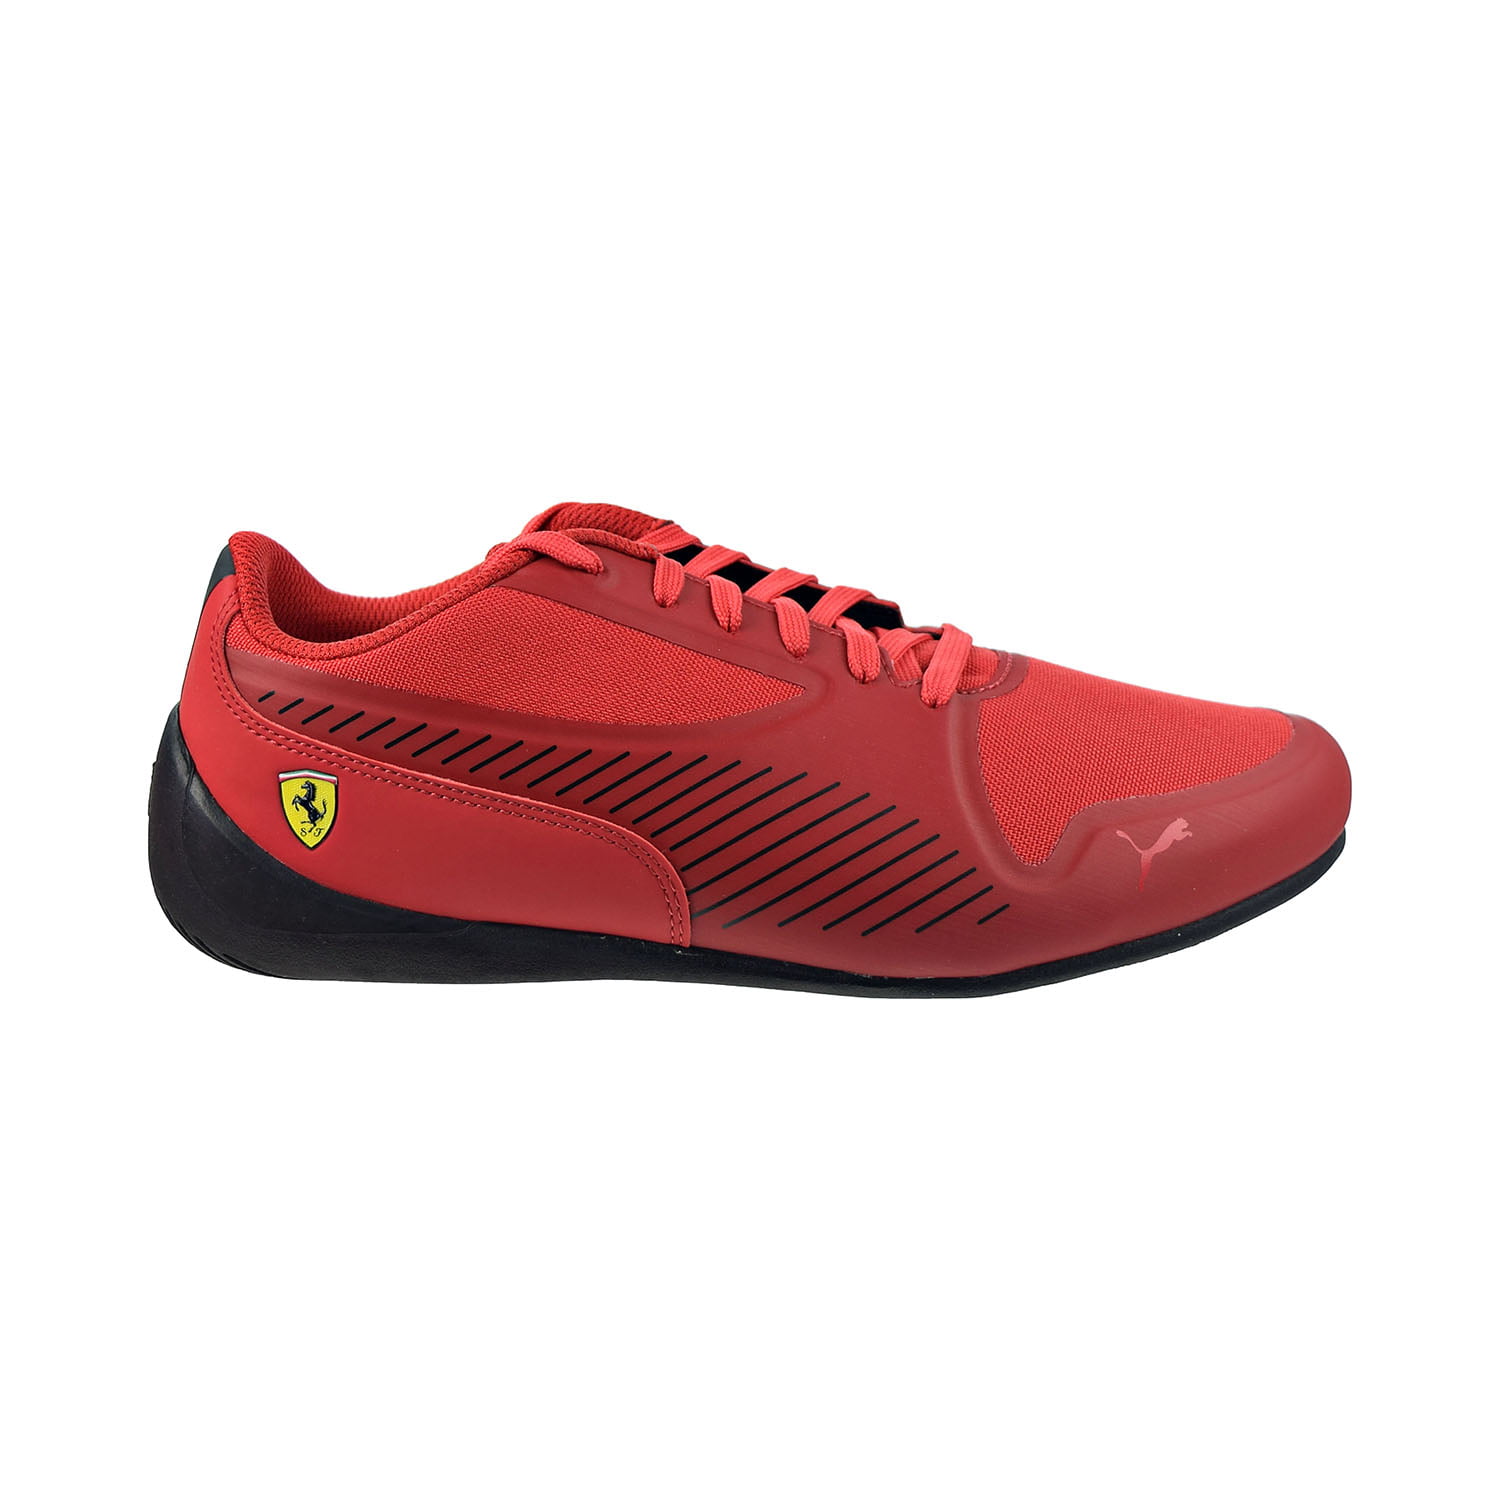 Shoes Rosso Corsa-Puma Black 306391-01 